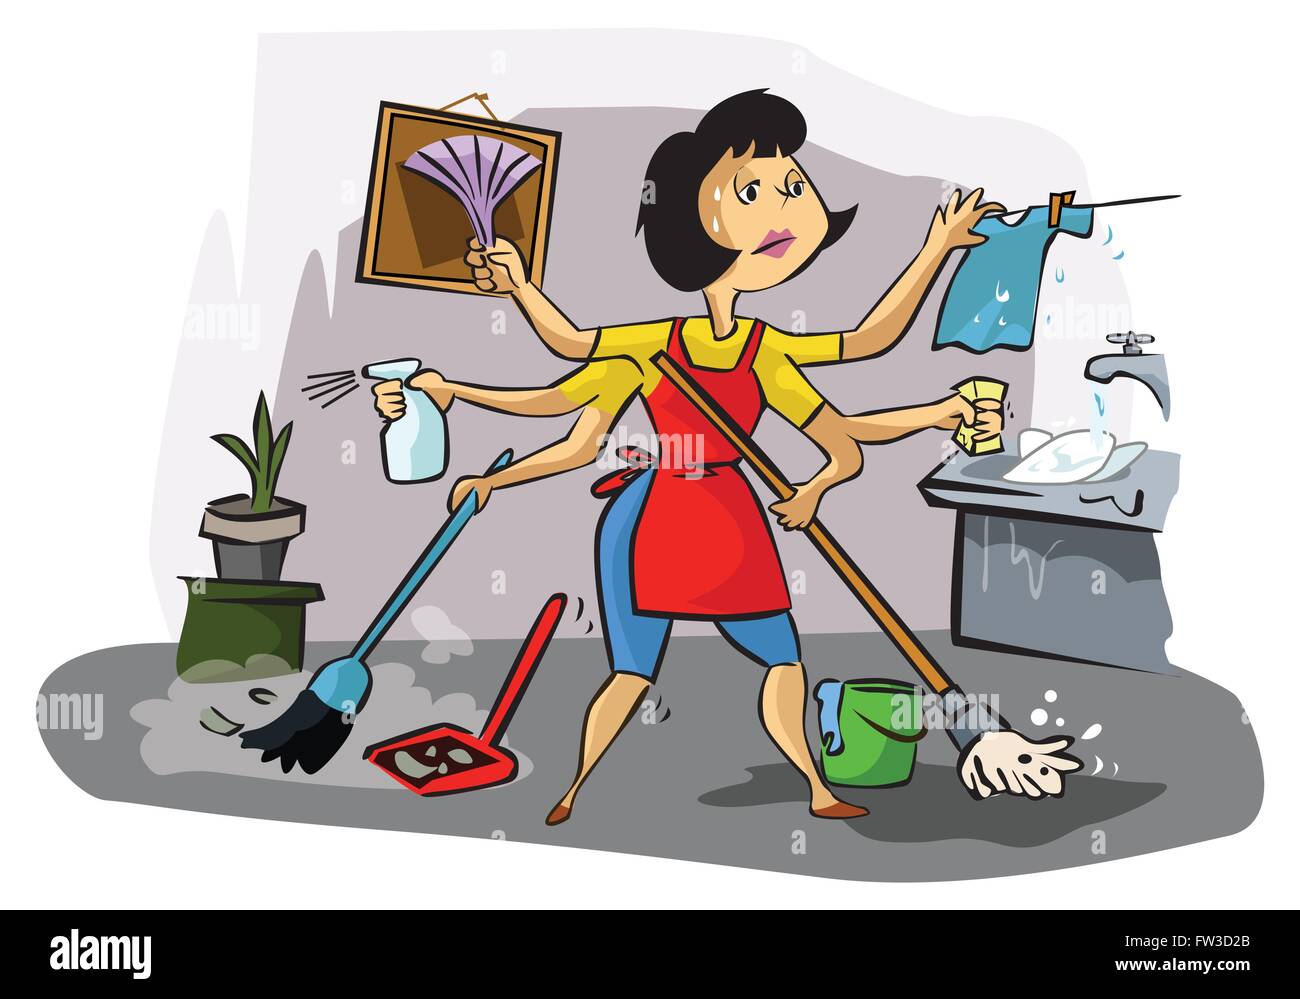 Запусти уборку 2. Стирка уборка готовка. Домохозяйка иллюстрация. Женщина уборка. Женщина вся в домашних делах.